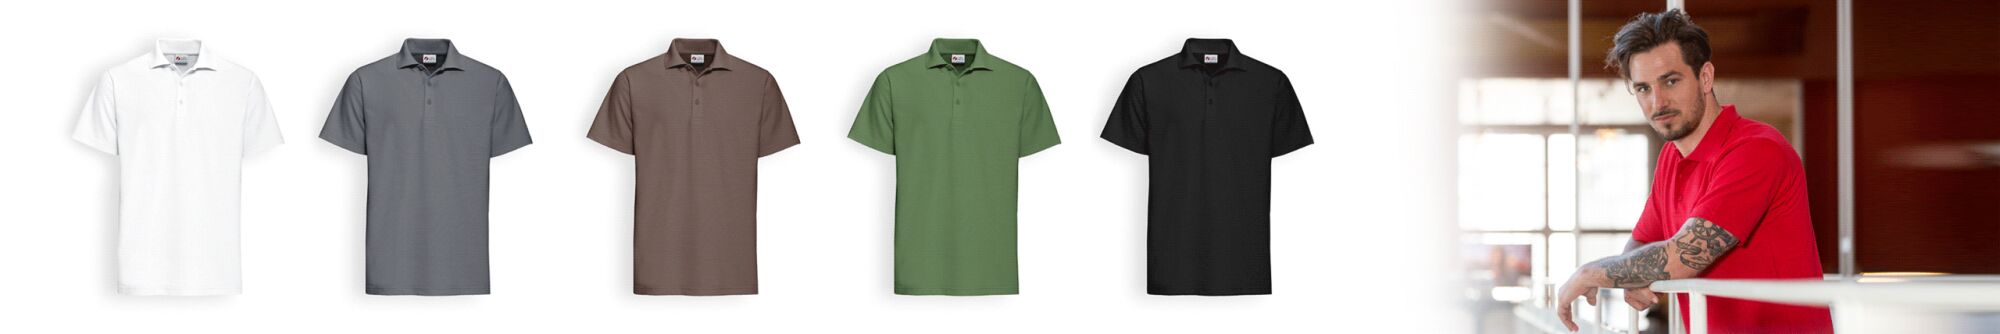 Poloshirt-Allrounder: Praktischer als Hemden, seriöser als Shirts